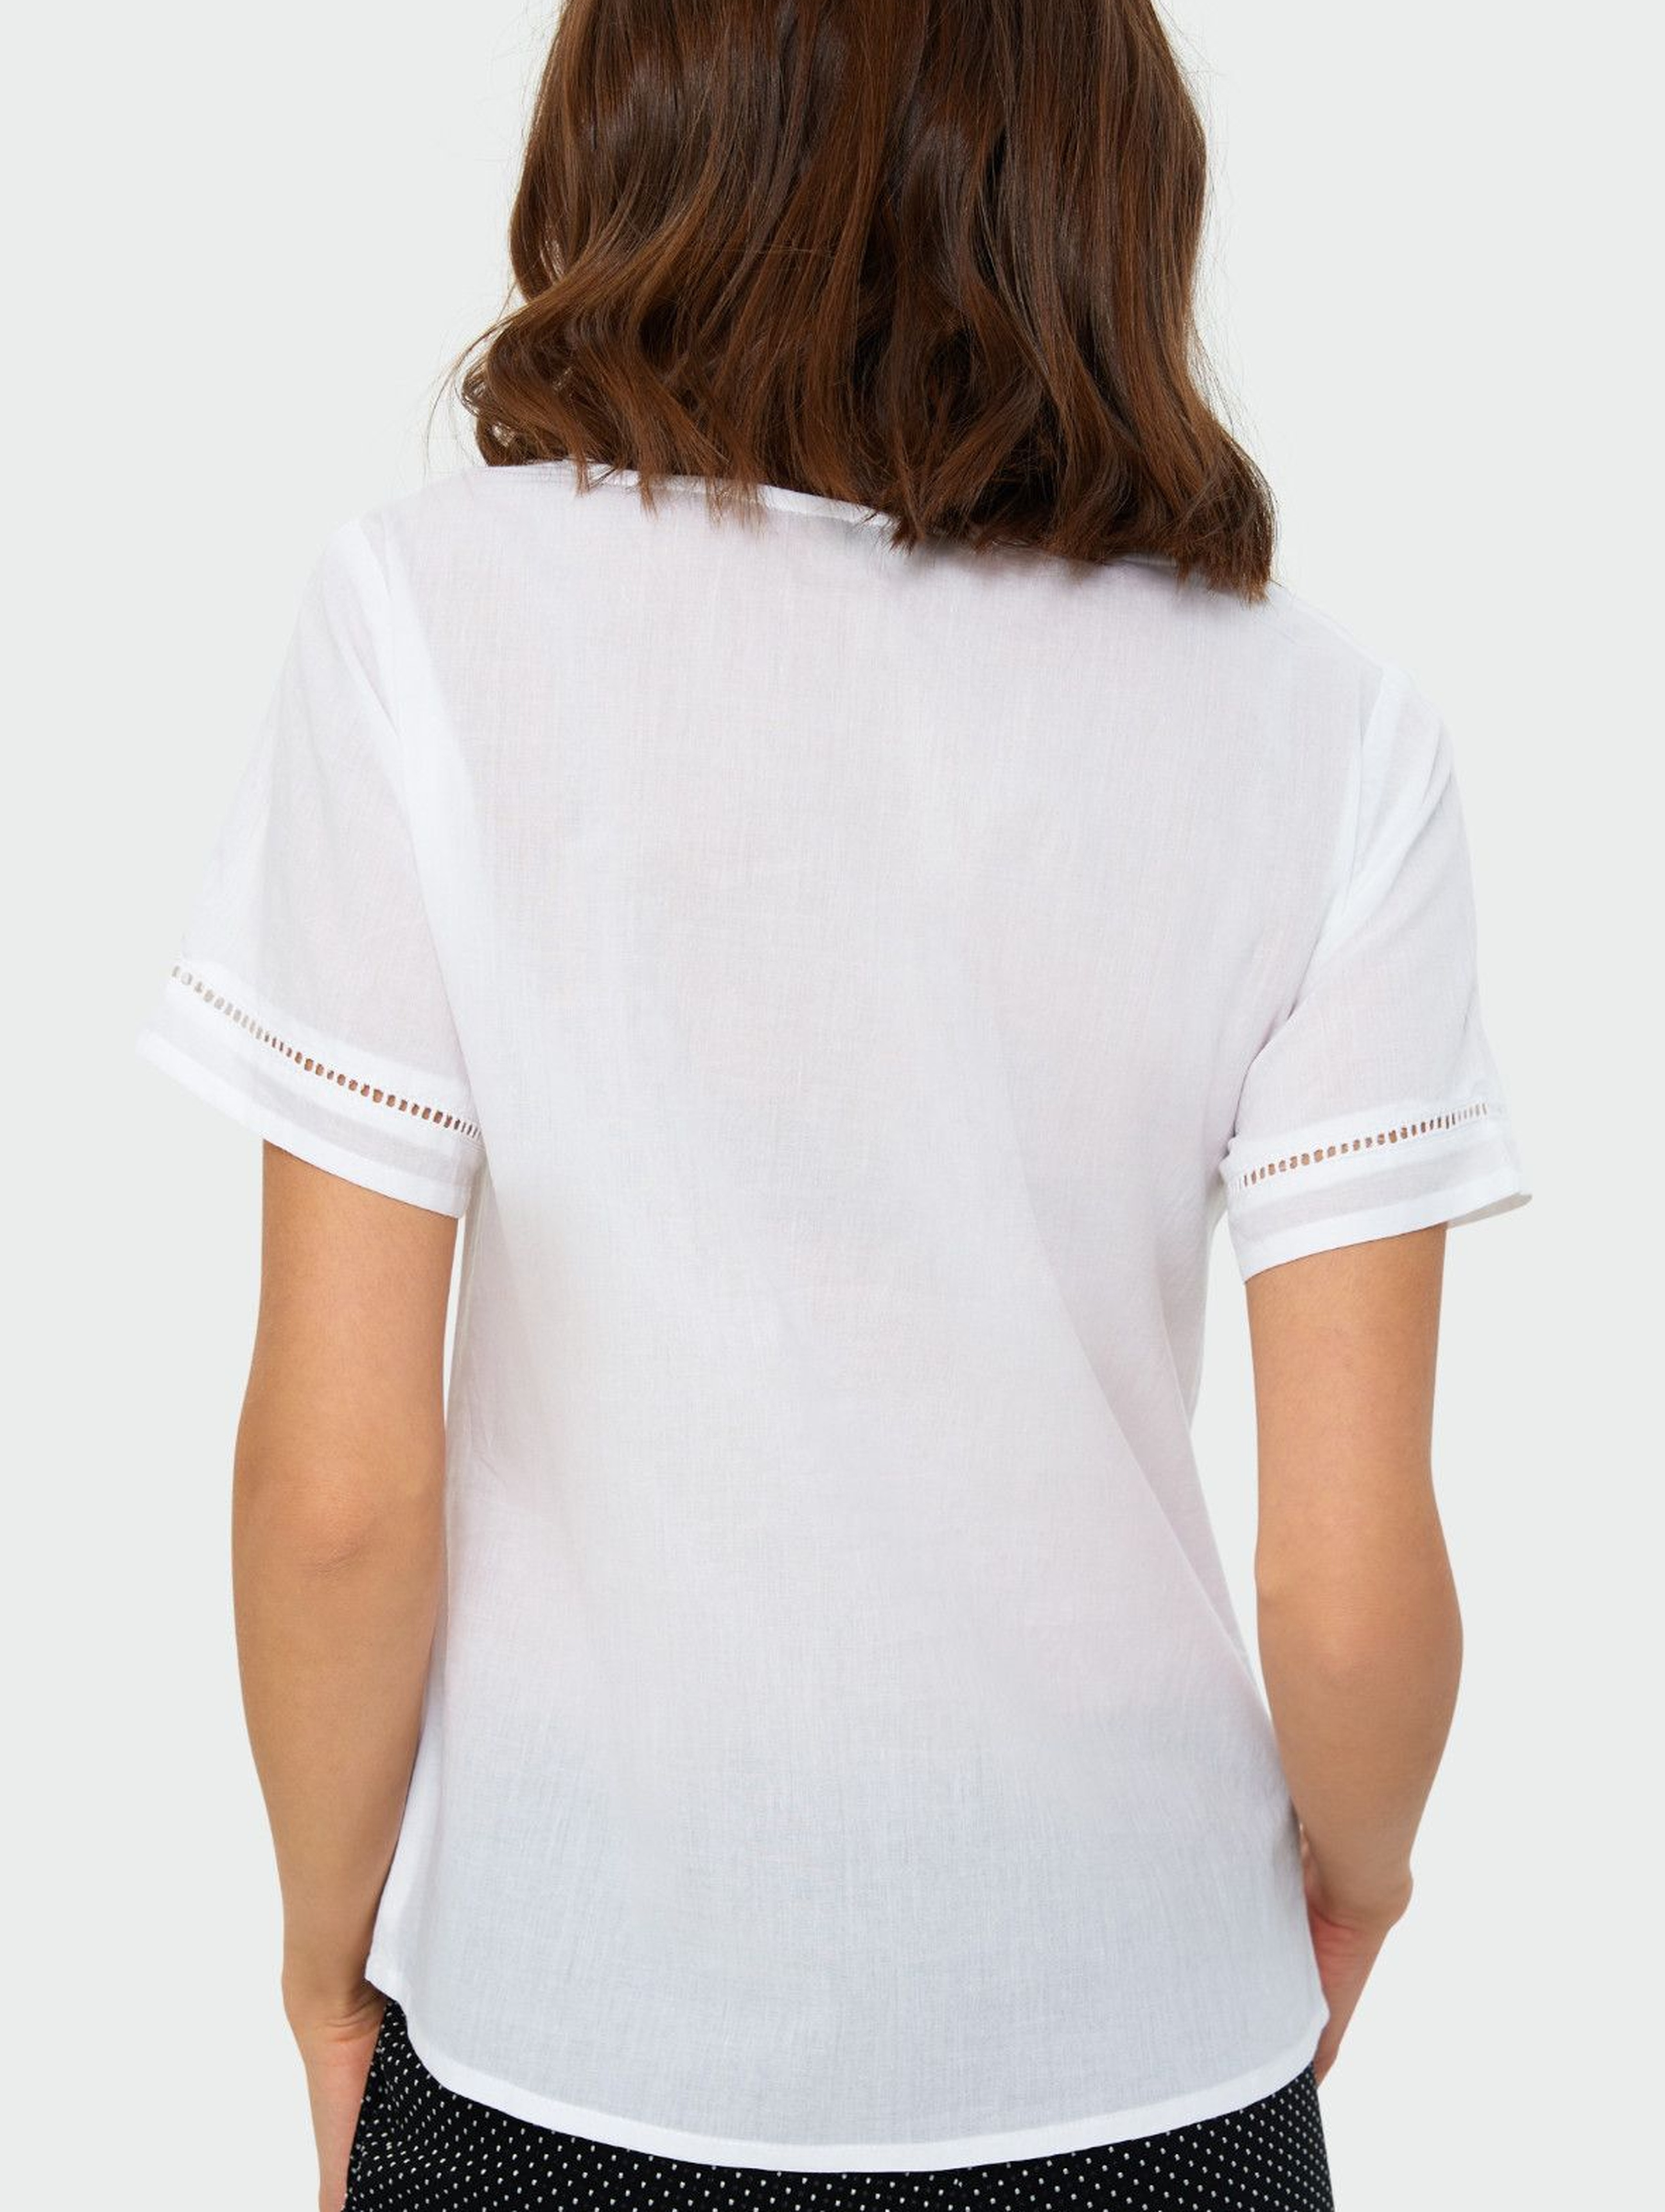 Biały bawełniany  T-shirt damski na krótki rękaw z kwiatami